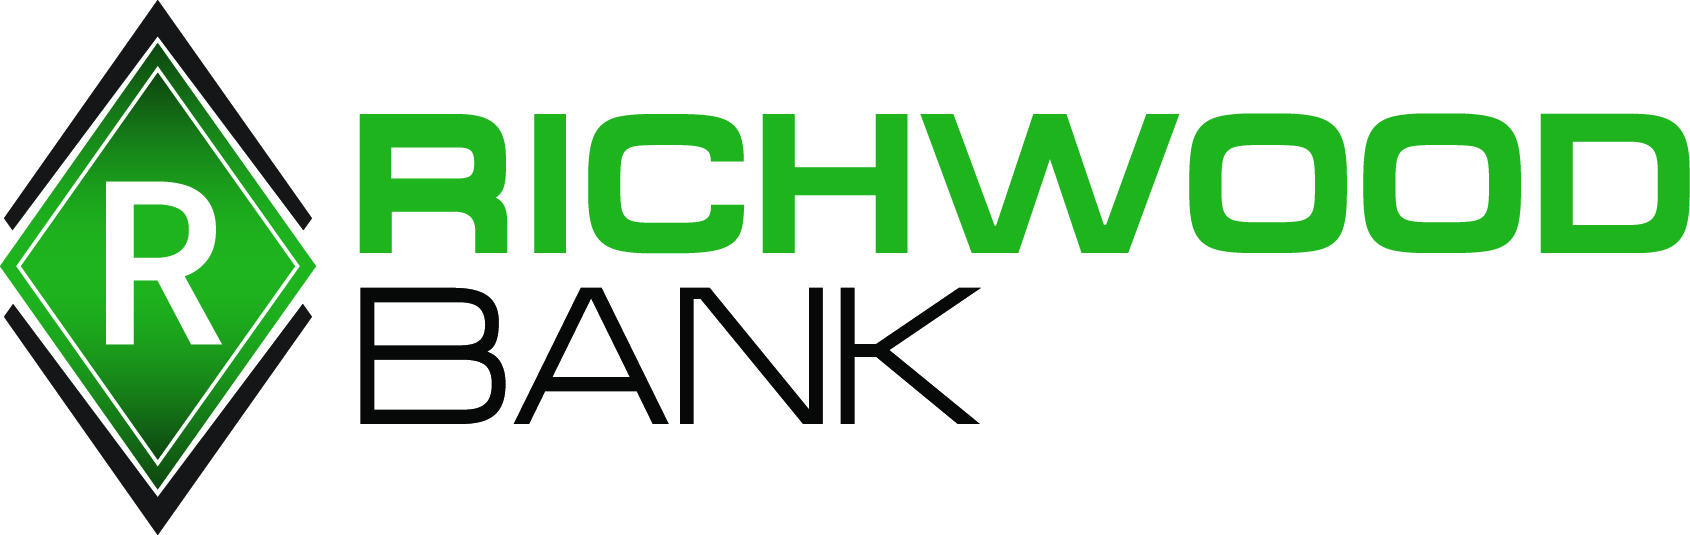 Richwood Banking Company's Logo